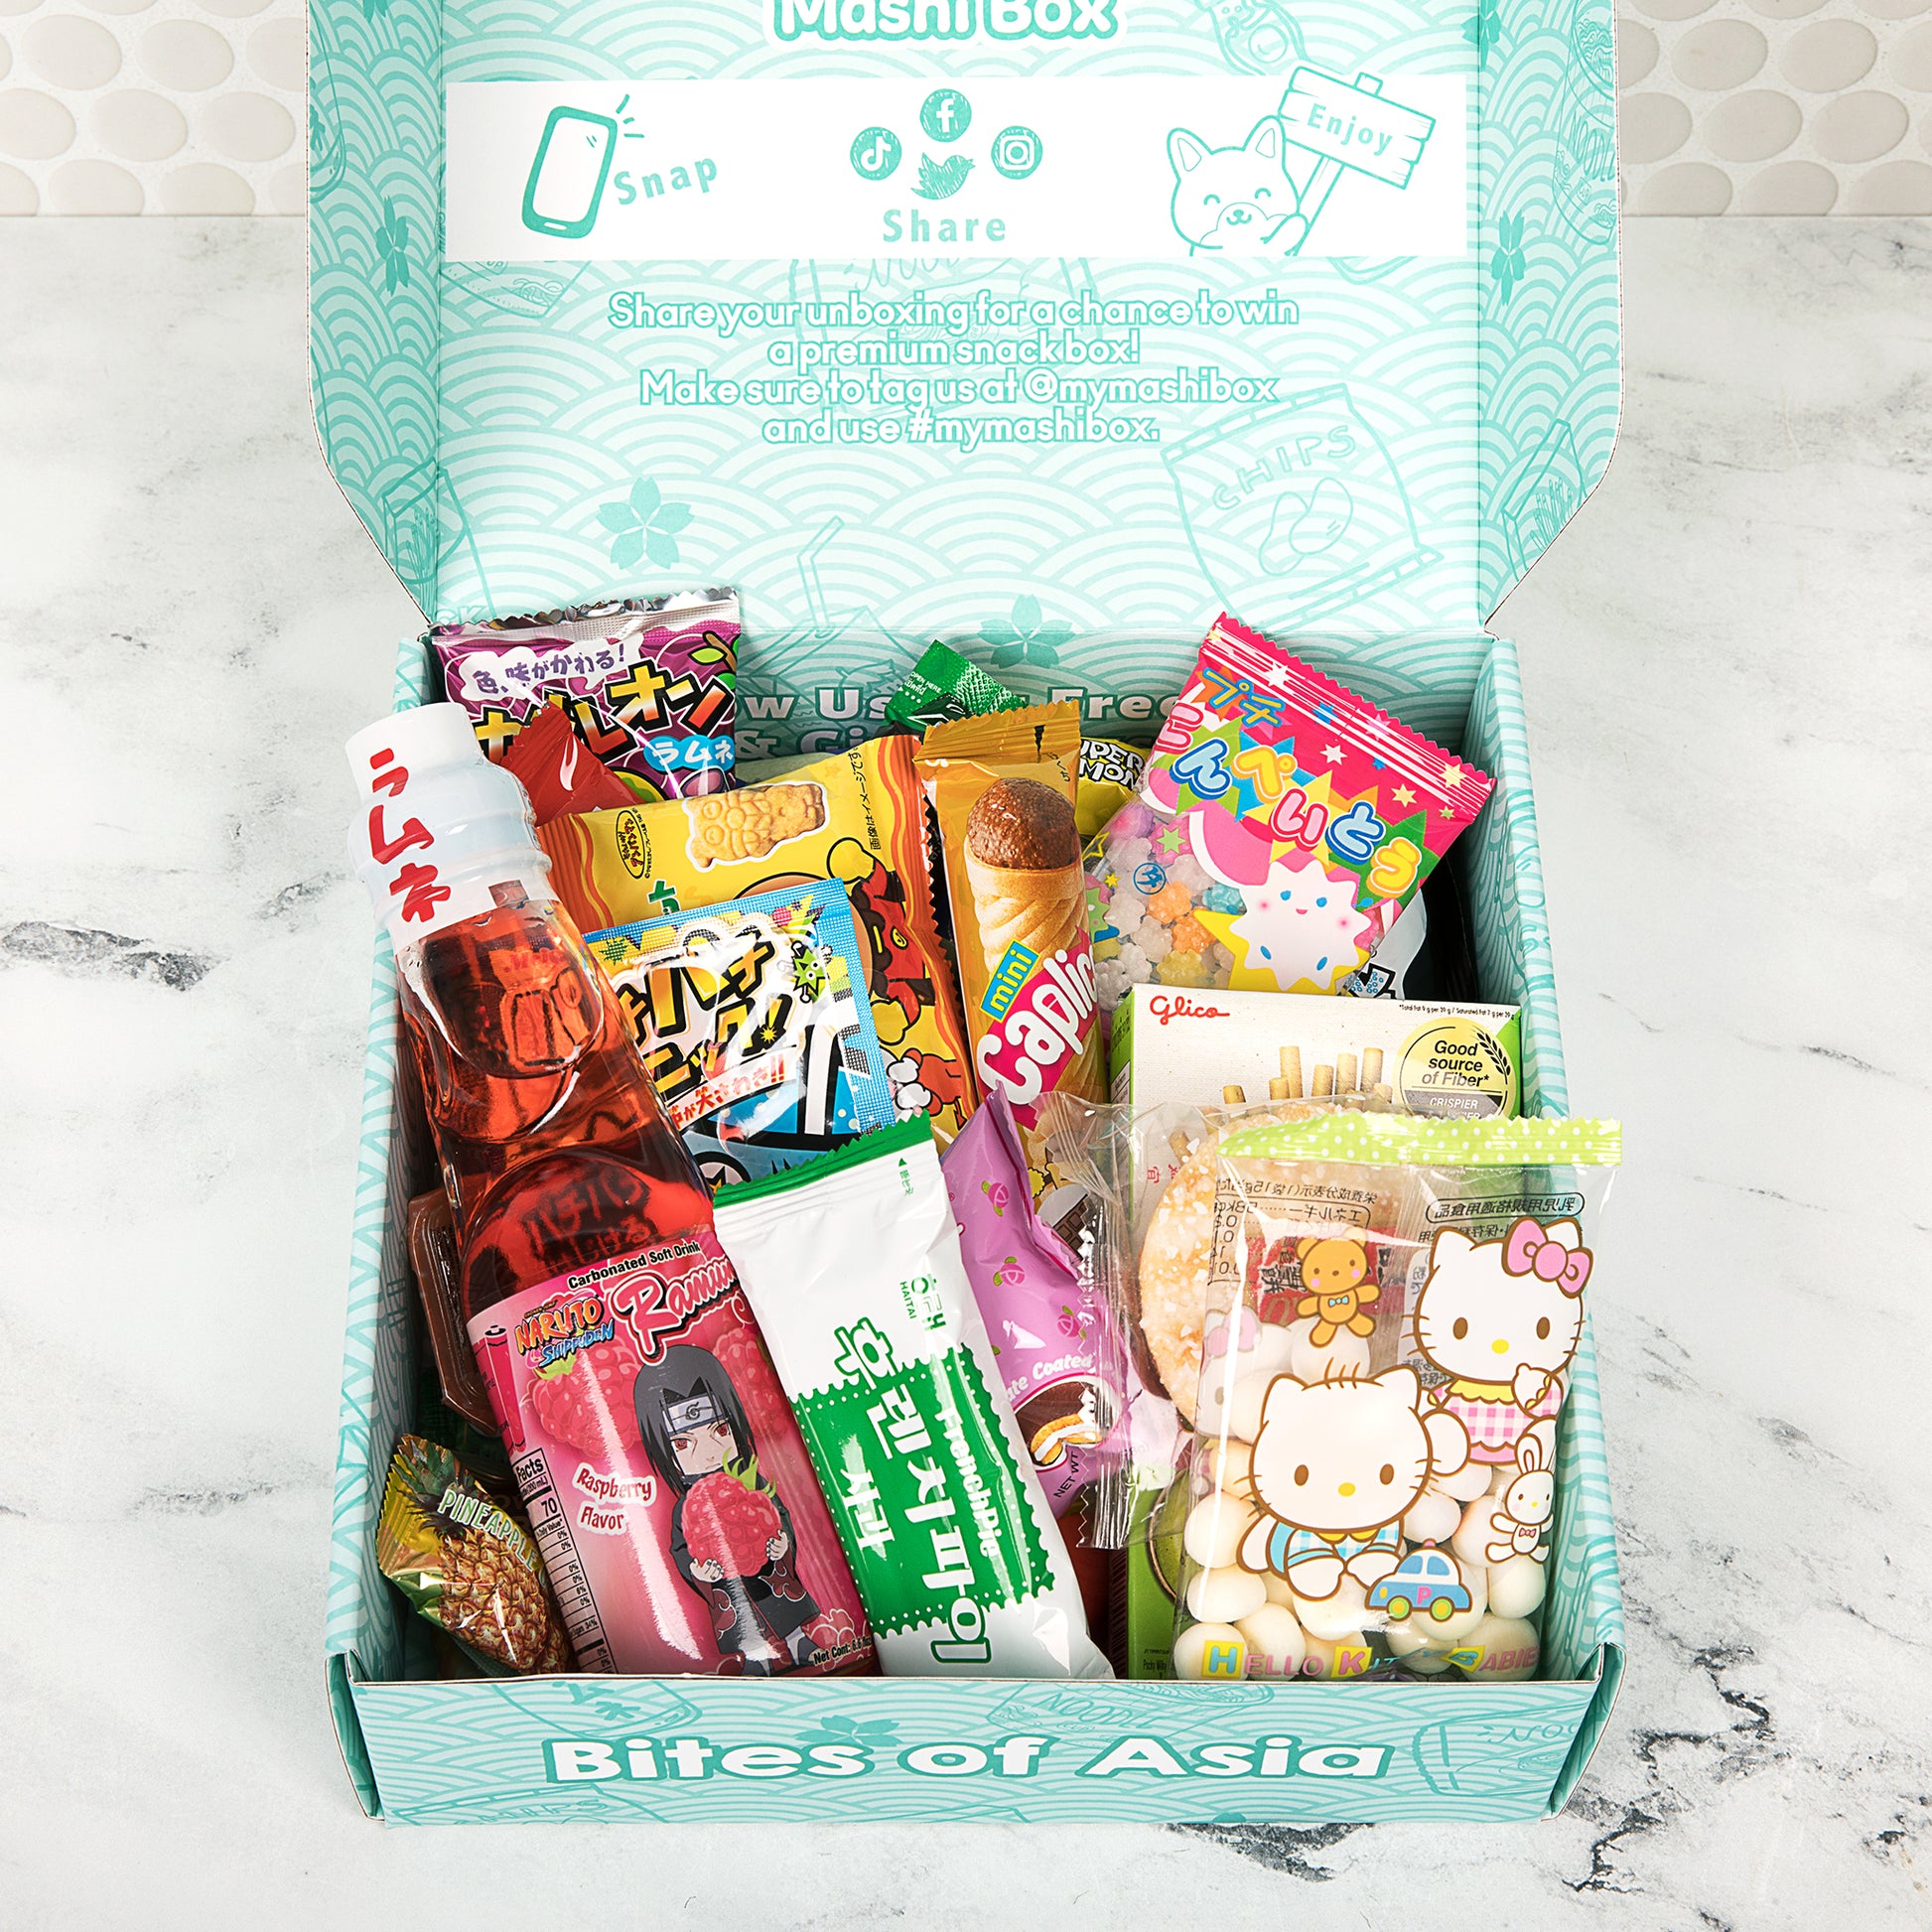 SANRIO Hello Sanrio Mystery Snack Box 